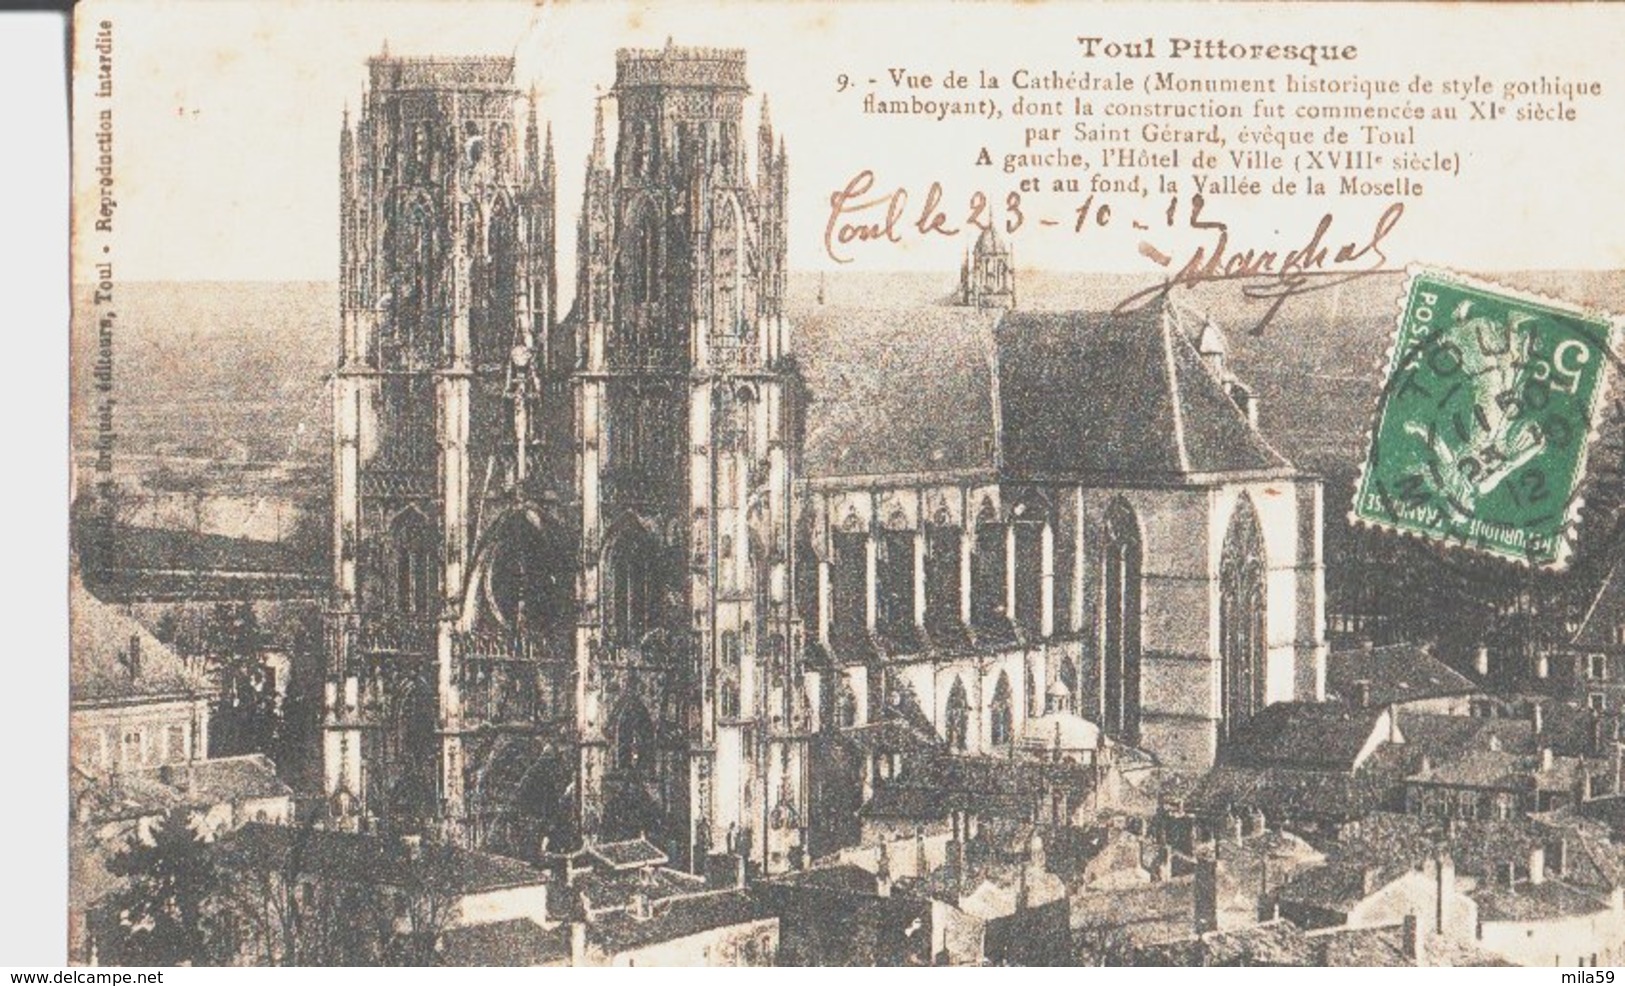 Toul Pittoresque. 9. Vue De La Cathédrale. De Hubert Marchal & Gobley à Paul Quent ( Quin ?) Mécanicien à Marles. 1912. - Toul